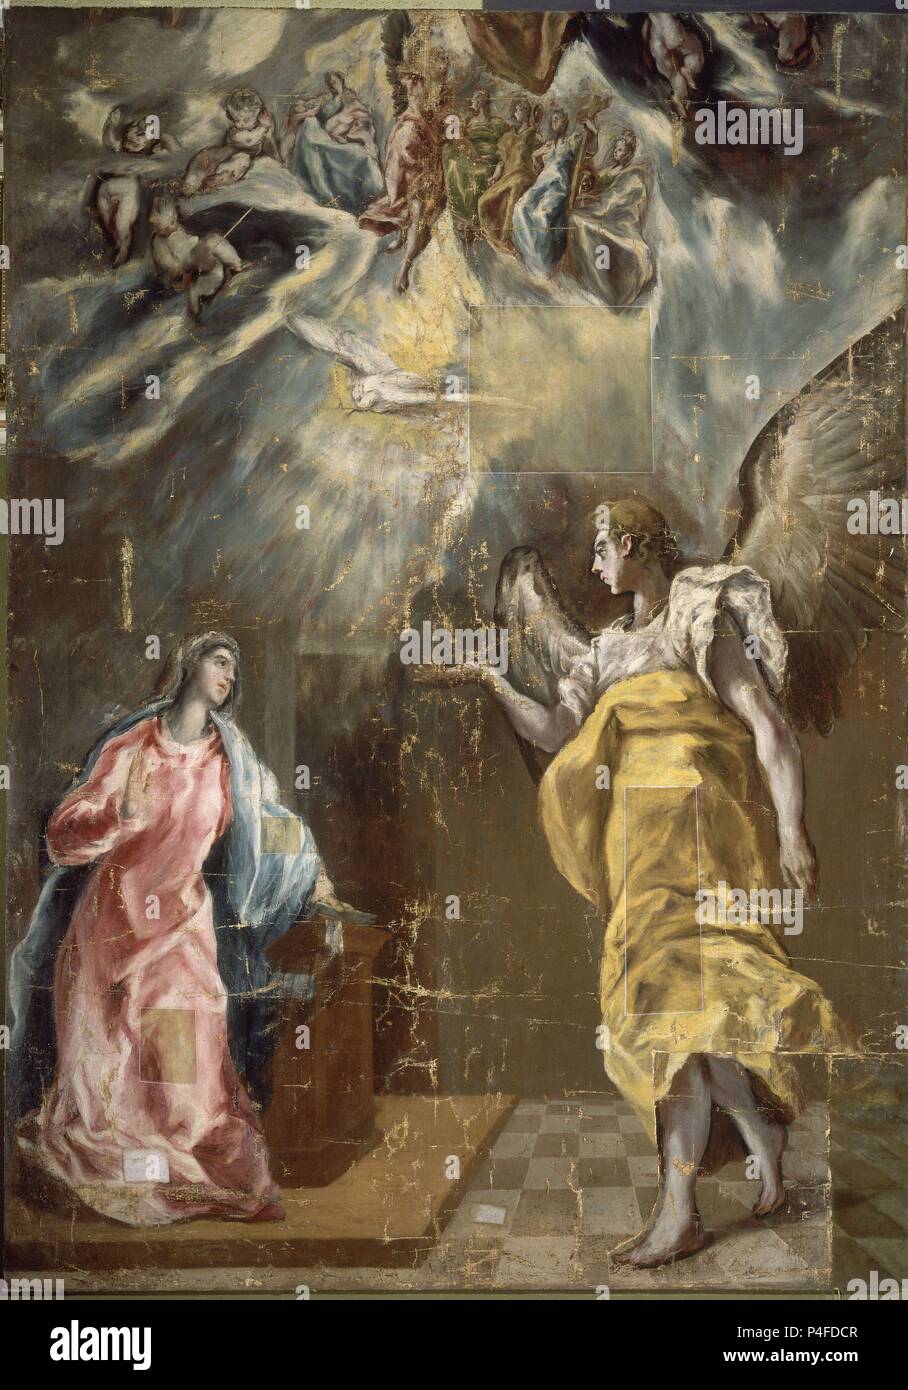 La Anunciación - 1614 - Óleo sobre tela - 294x209 cm - Español el Manierismo. Autor: El Greco (1541-1614). Ubicación: Fundación Santander Central Hispano, Madrid, España. También conocido como: Anunciación; la anunciación. Foto de stock